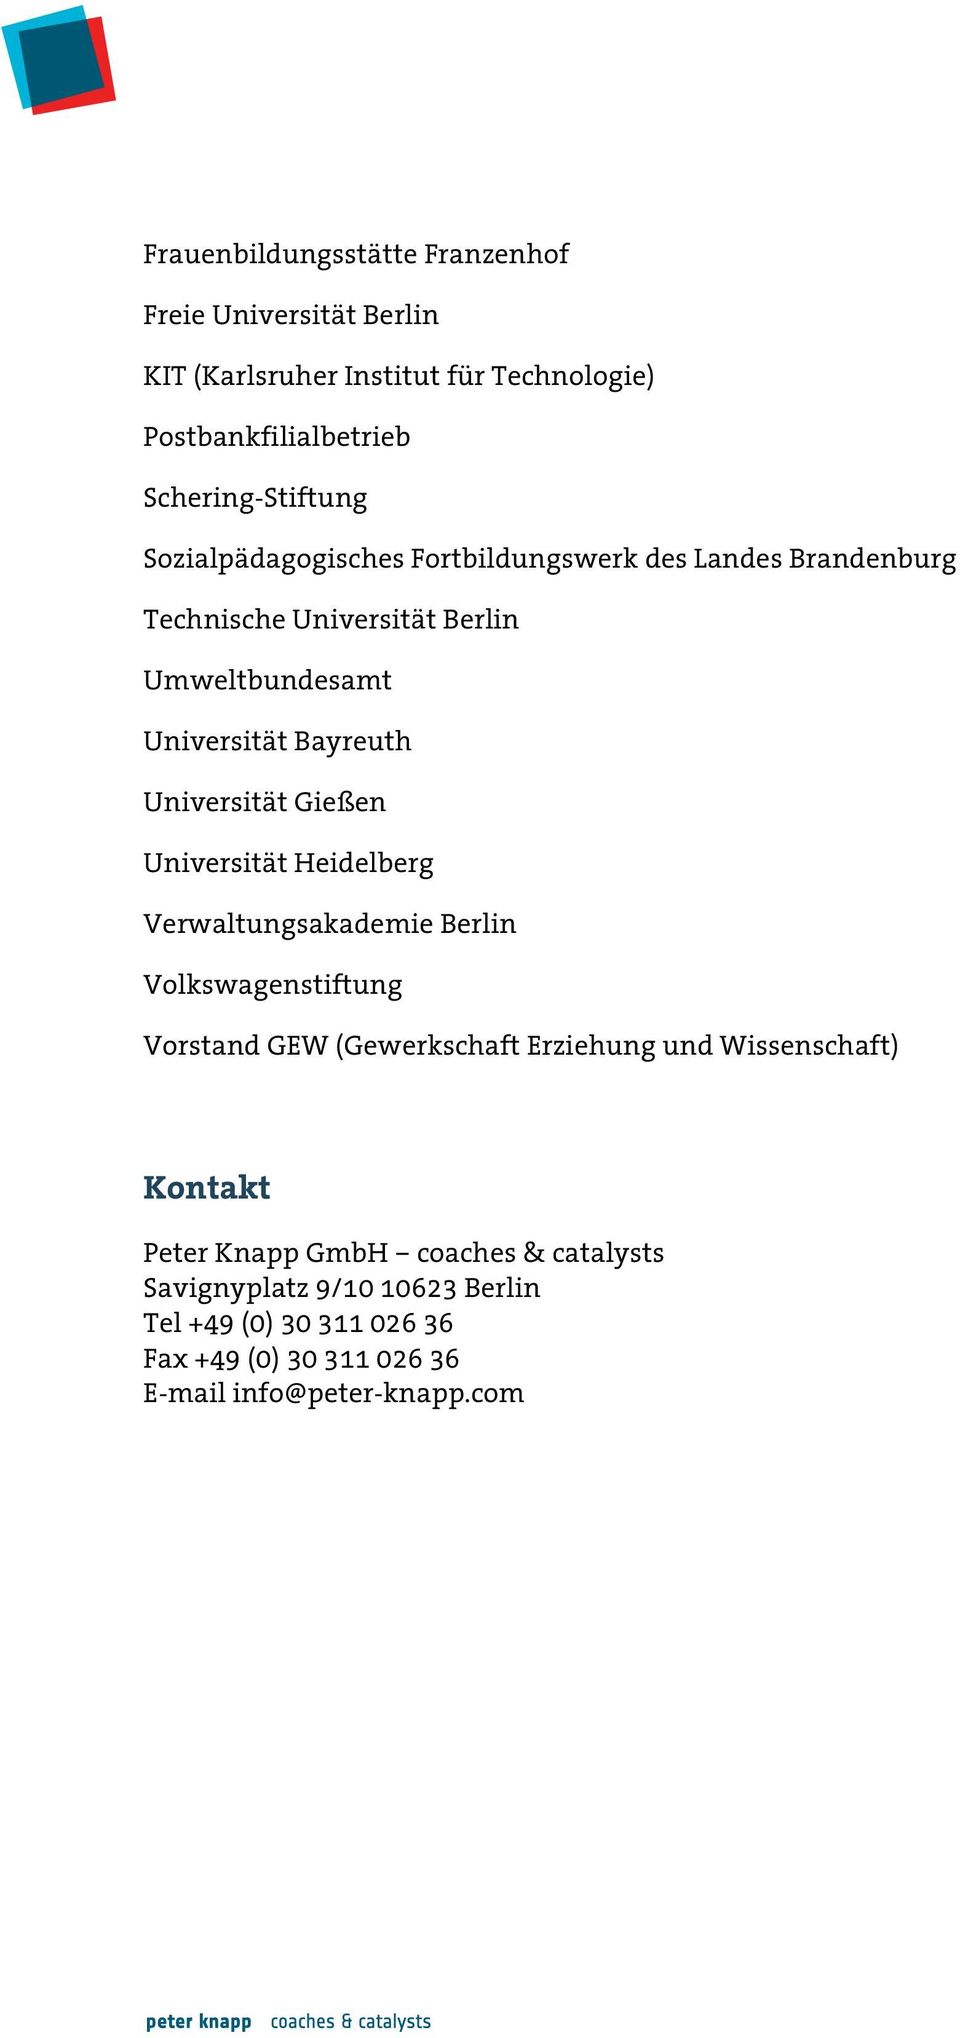 Gießen Universität Heidelberg Verwaltungsakademie Berlin Volkswagenstiftung Vorstand GEW (Gewerkschaft Erziehung und Wissenschaft) Kontakt